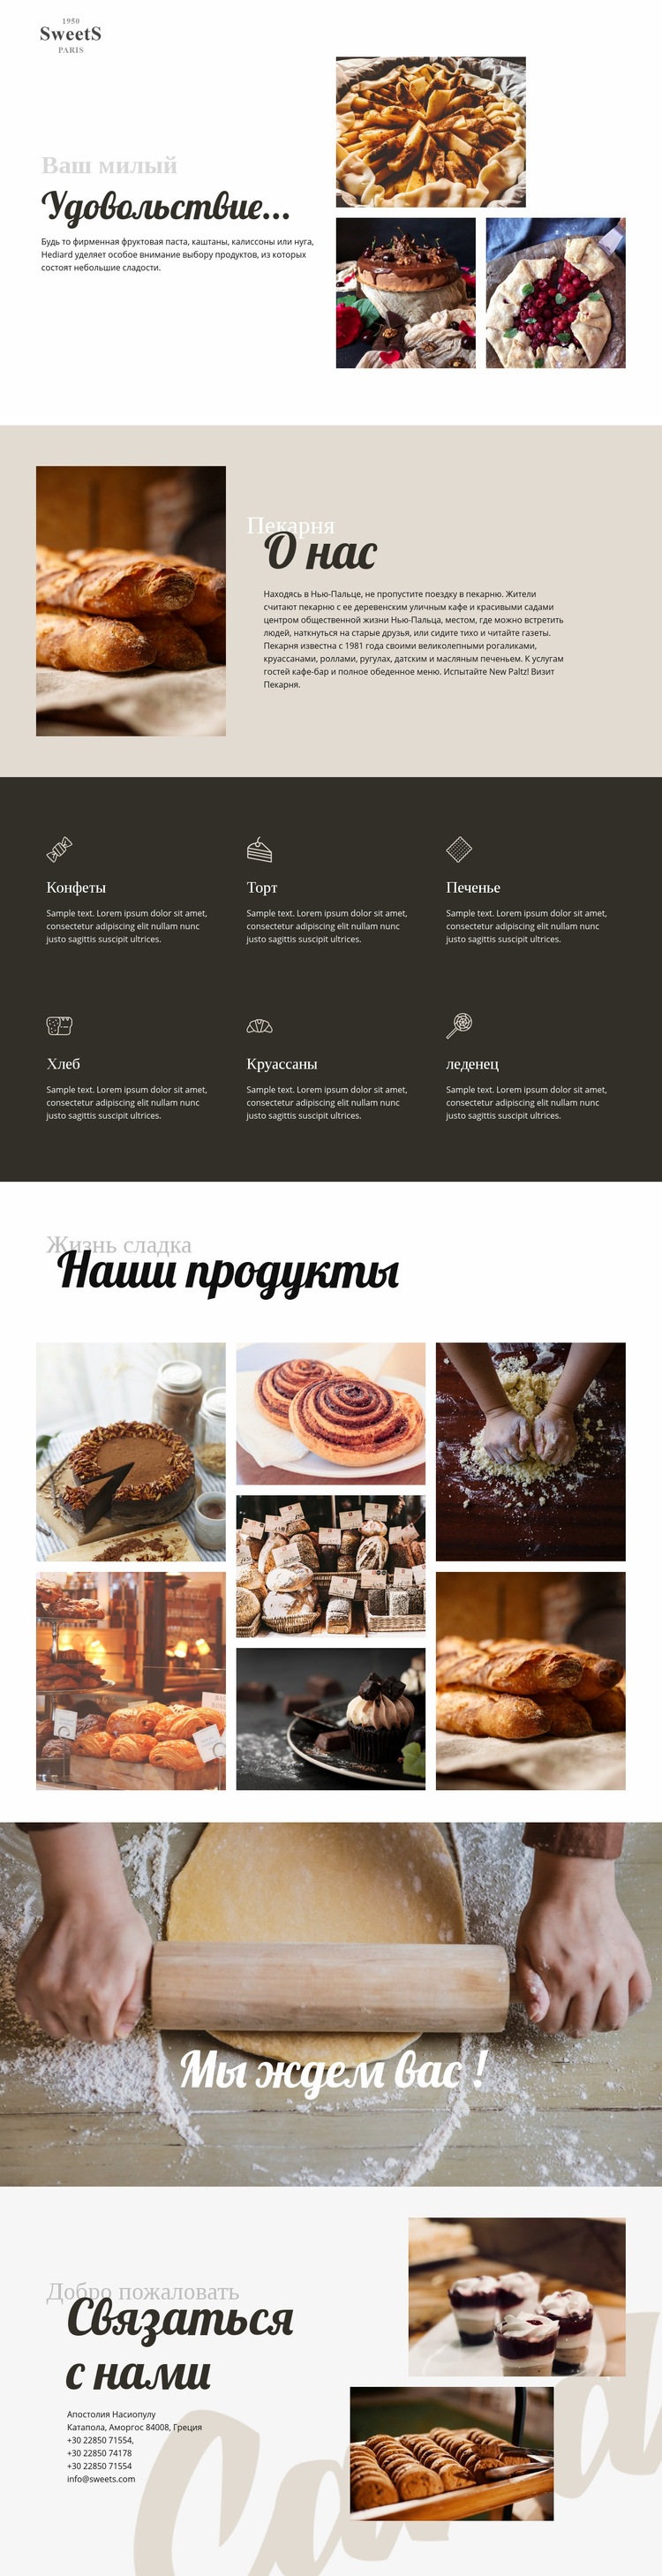 Торты и выпечка Шаблон веб-сайта